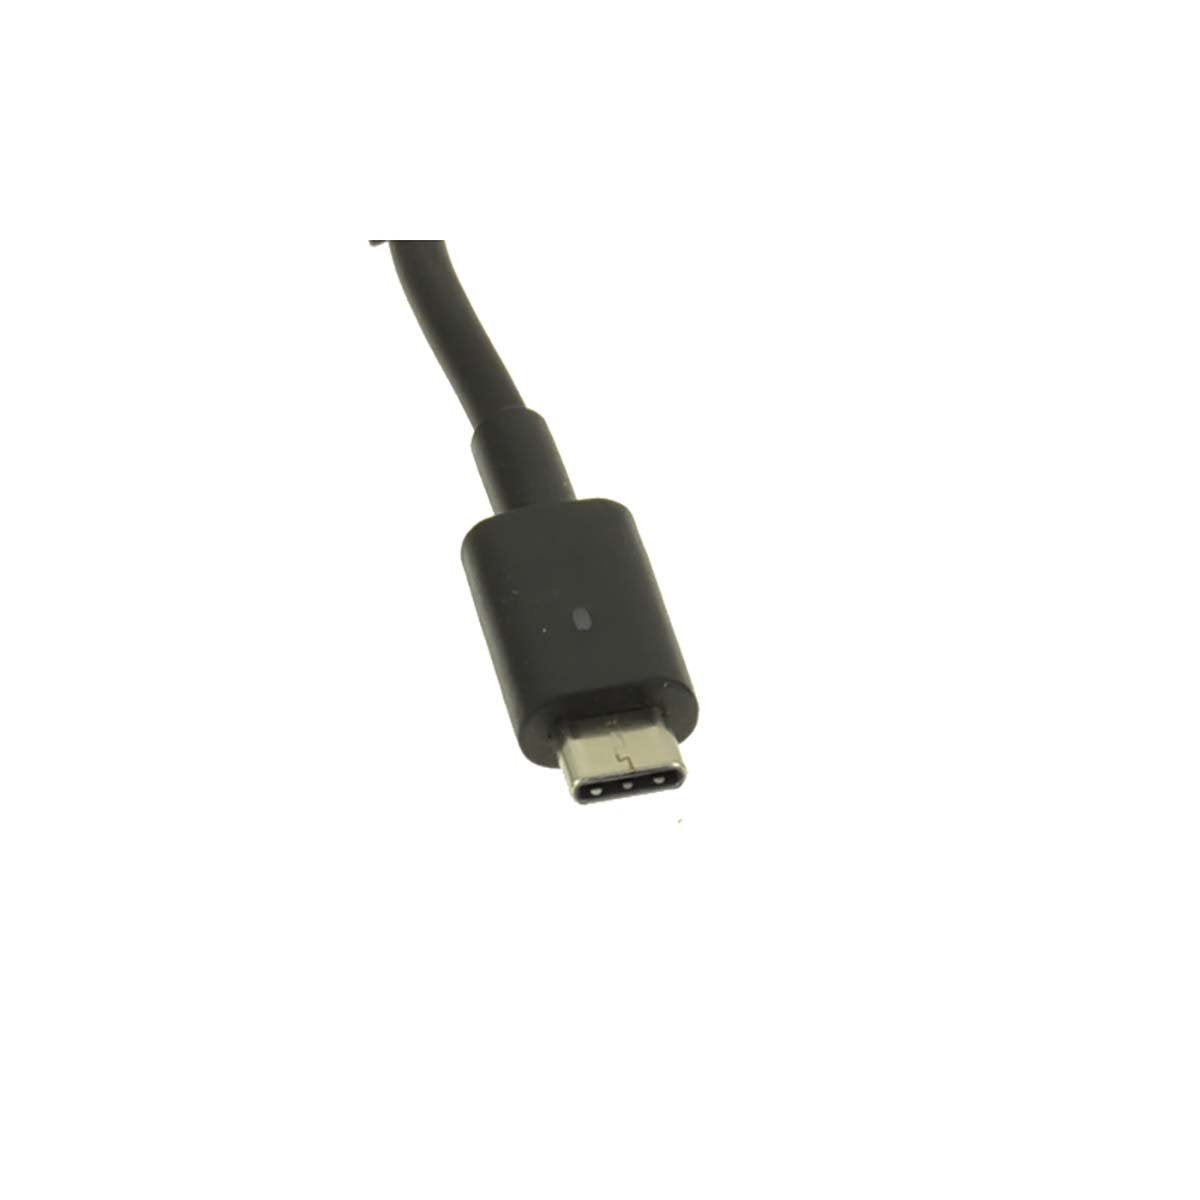 Dell ओरिजिनल 30W 20V USB टाइप C लैपटॉप चार्जर अडैप्टर 2CR08 के लिए पावर कॉर्ड के साथ